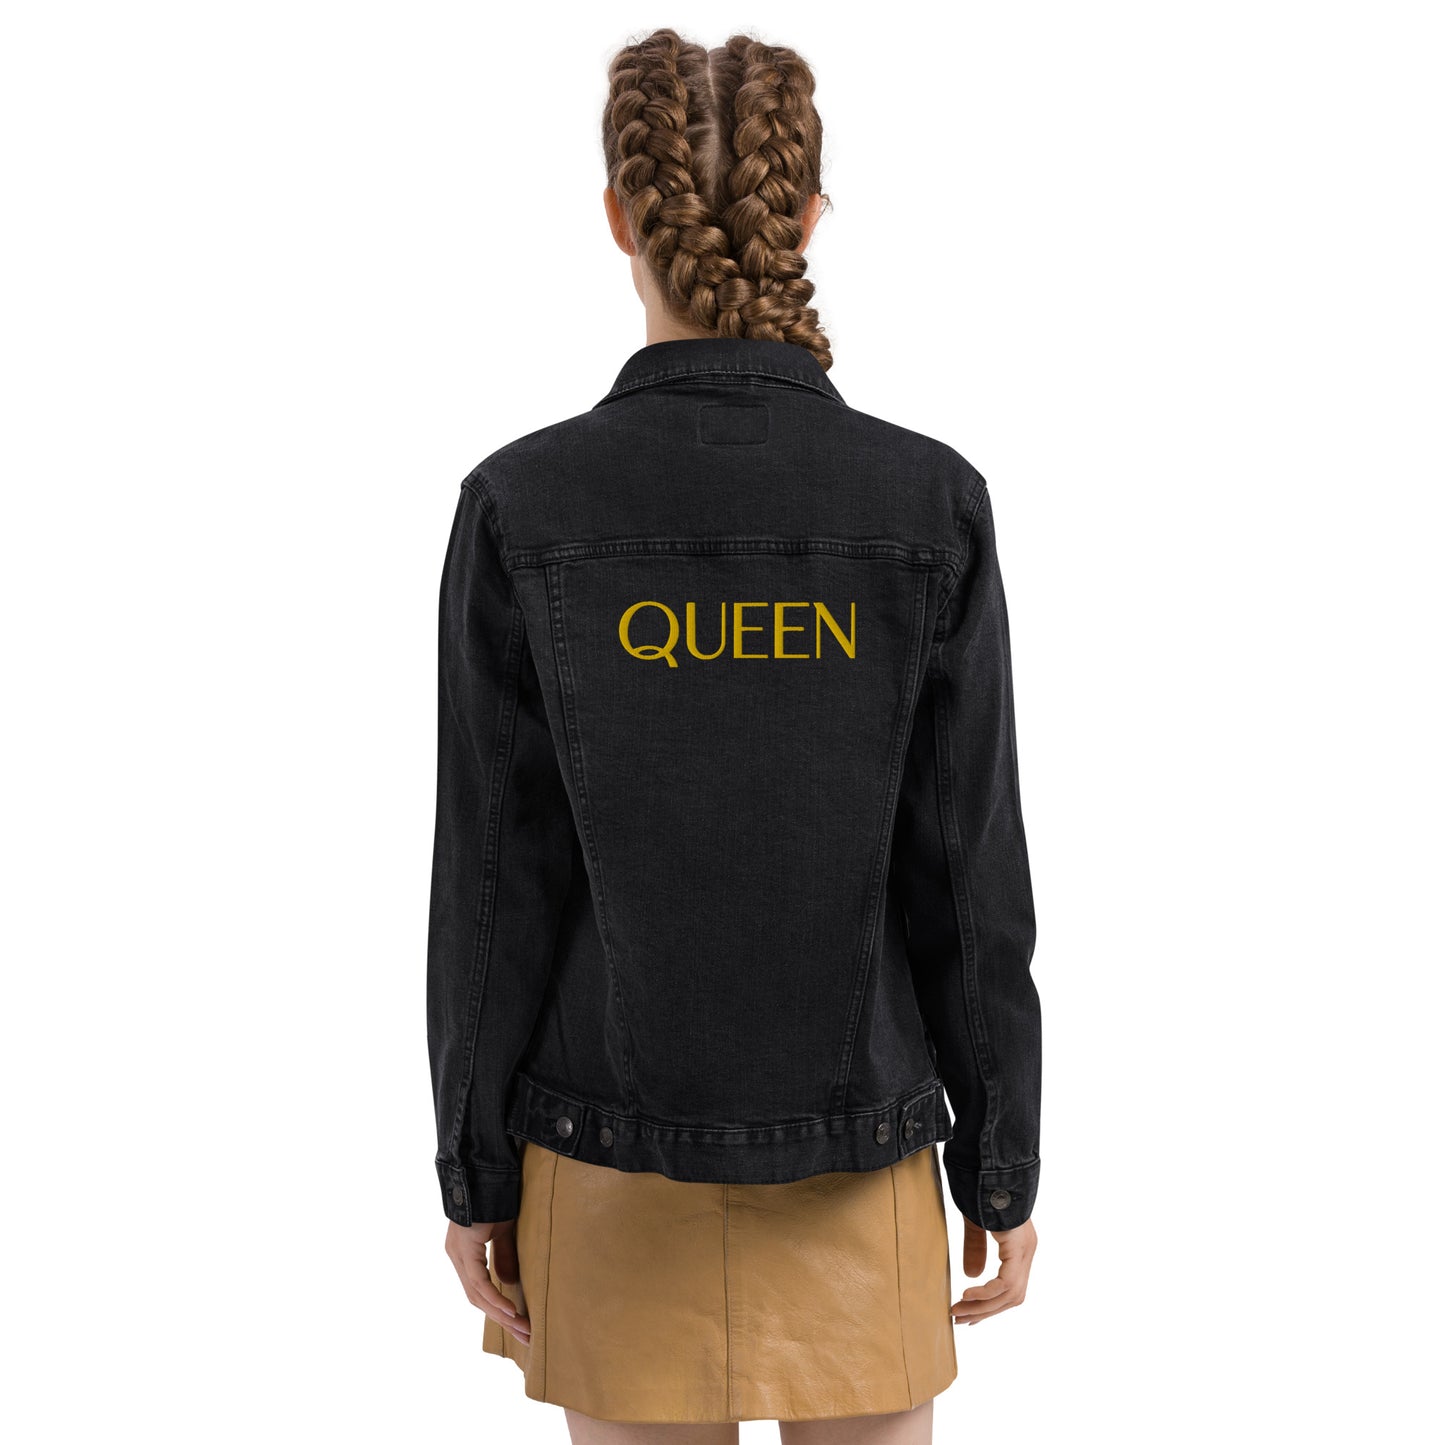 Queen denim jacket